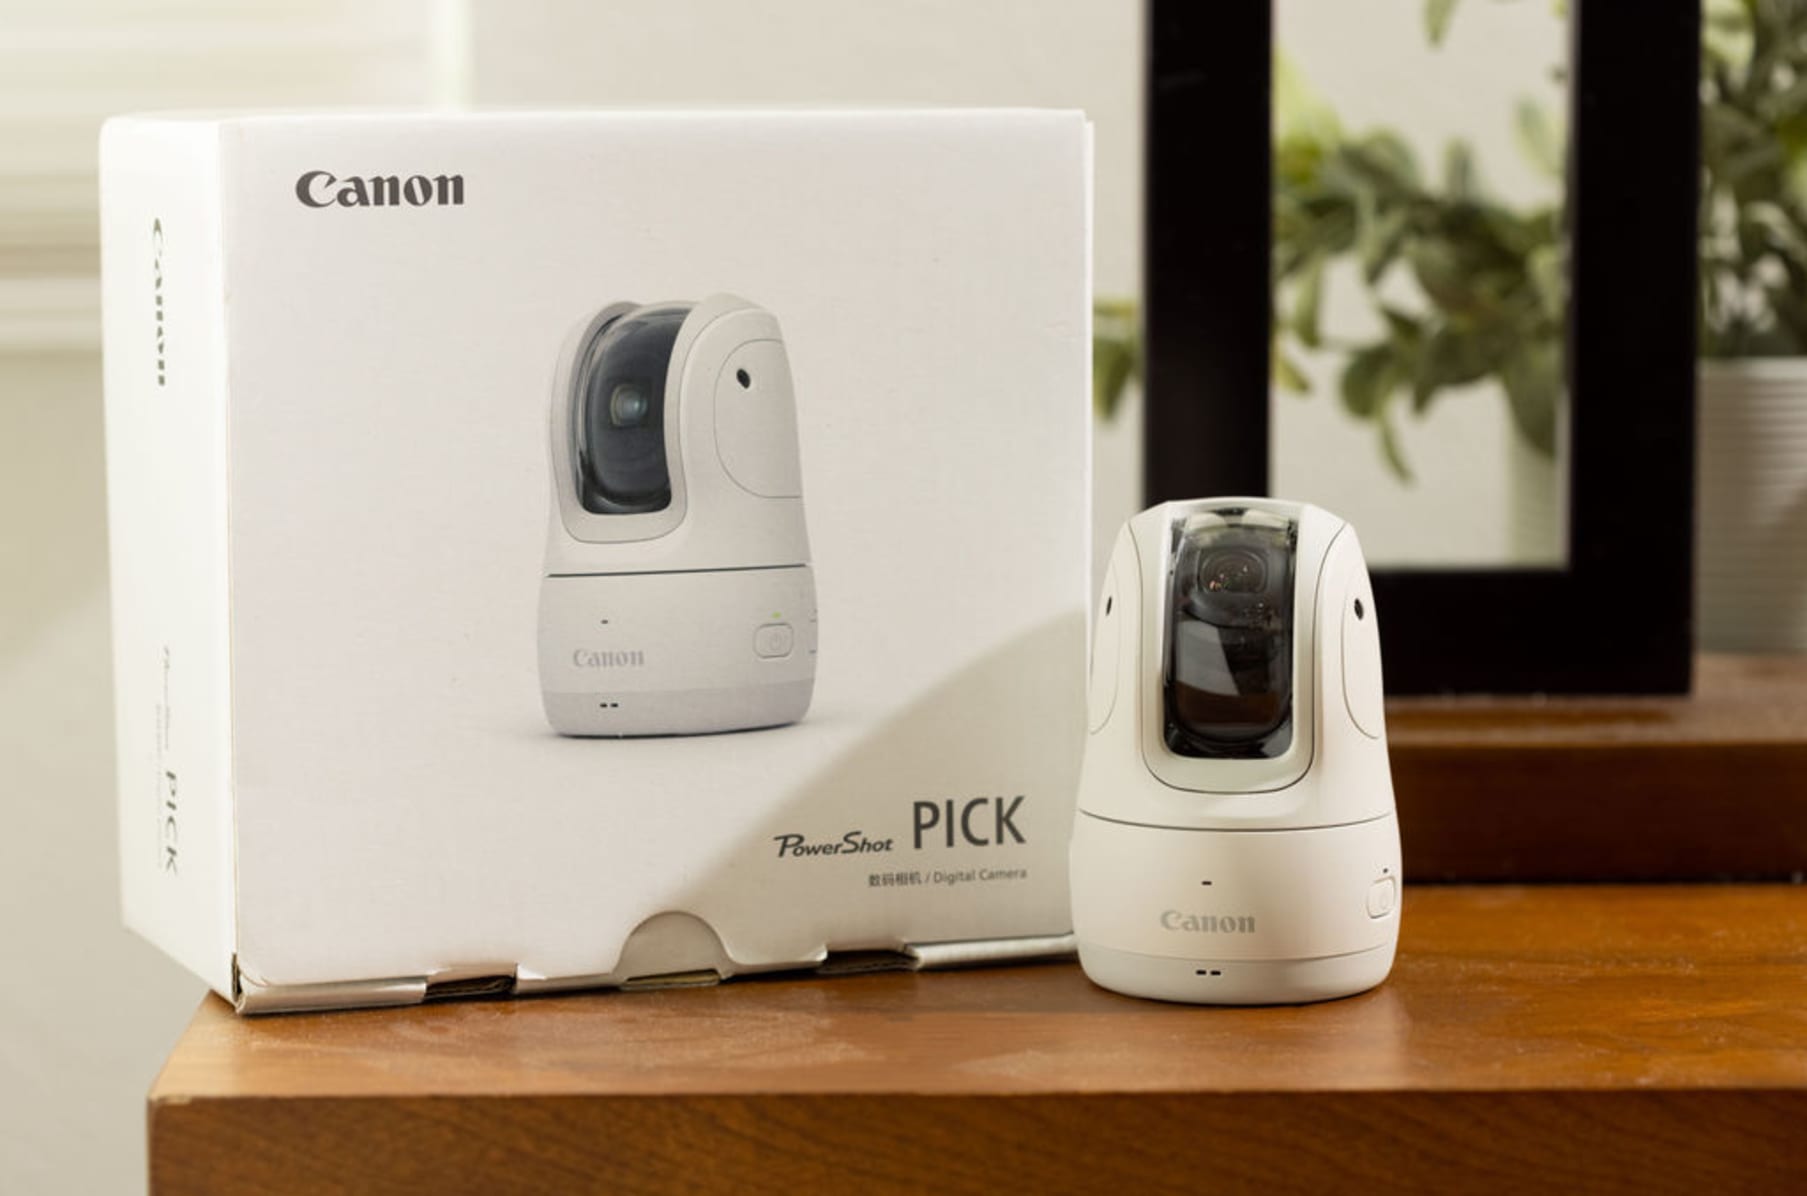 カメラ デジタルカメラ Canon PowerShot PICK: Capture Candid Moments | Indiegogo